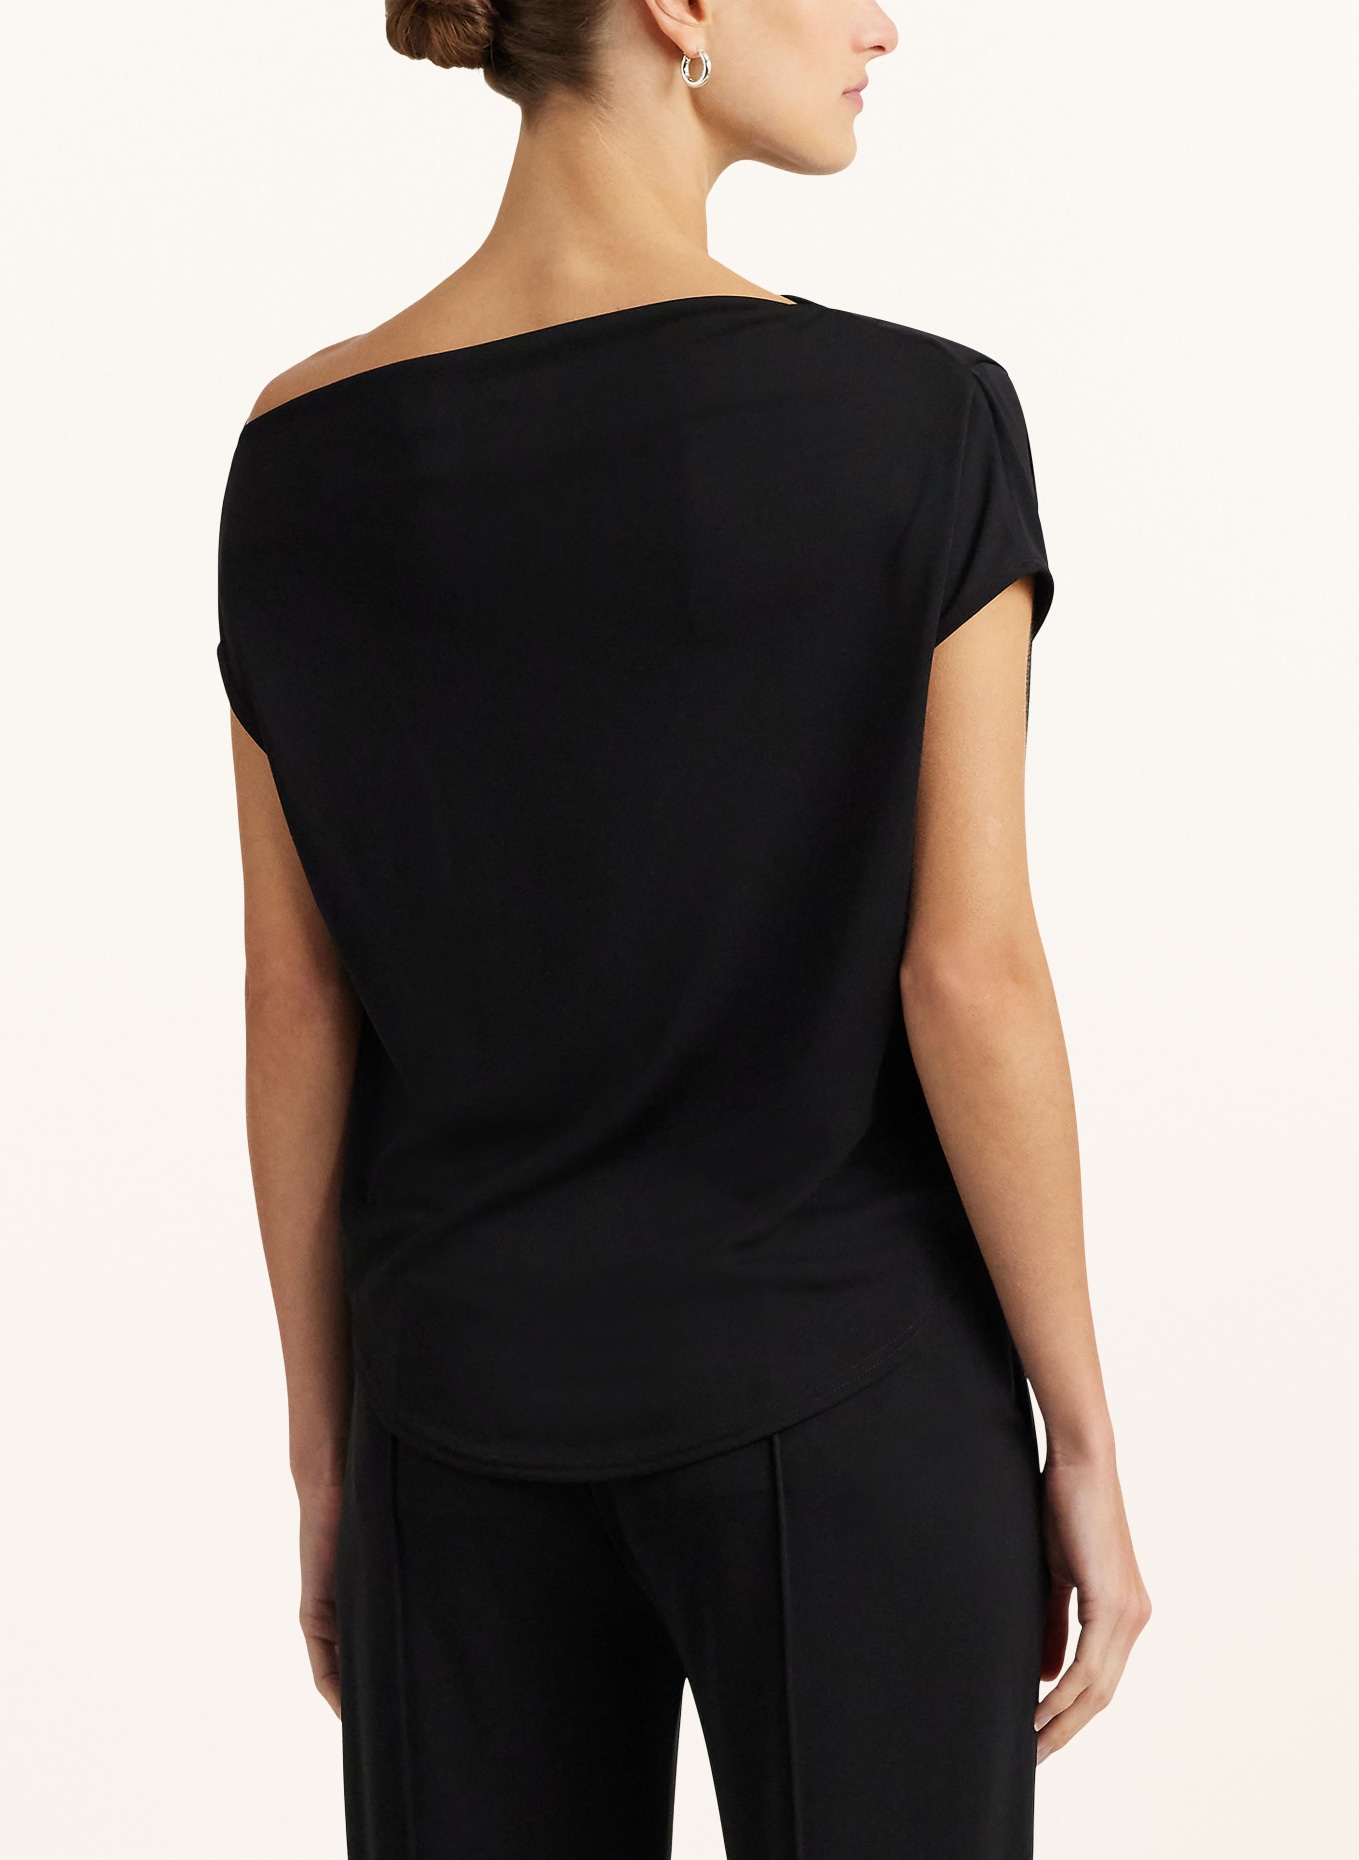 LAUREN RALPH LAUREN One-shoulder top, Color: BLACK (Image 3)